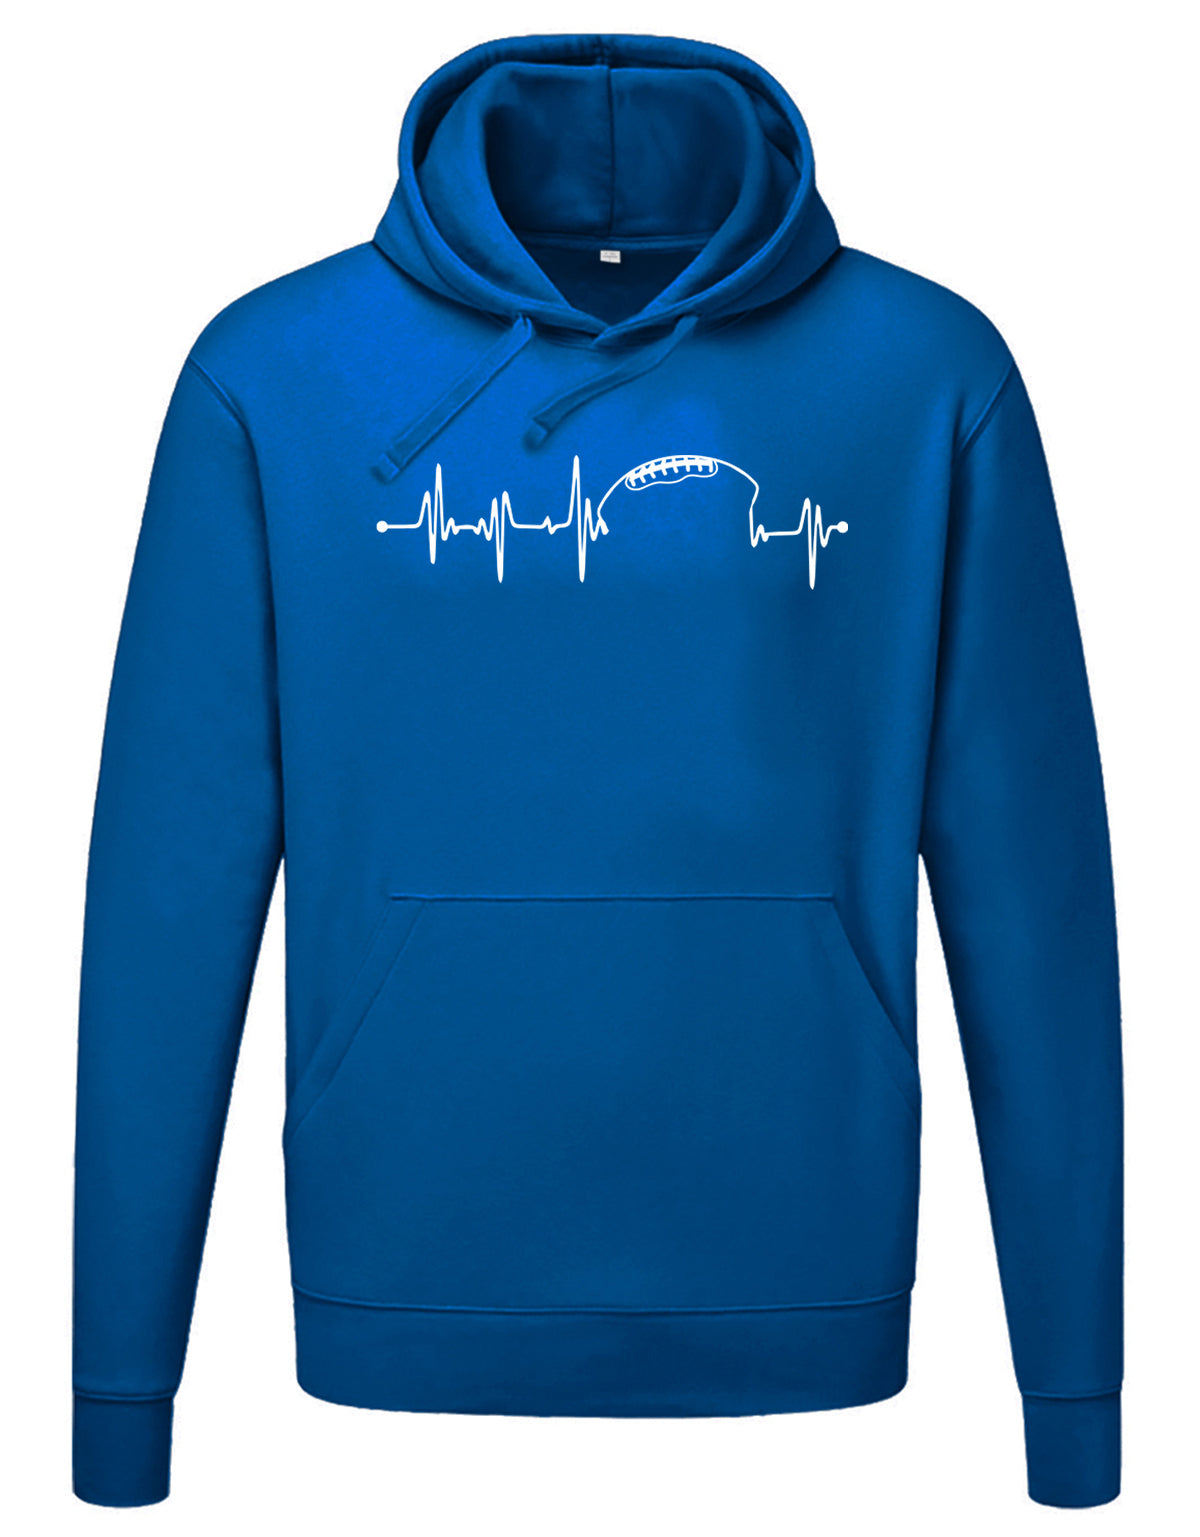 herren-hoodie-royalblau